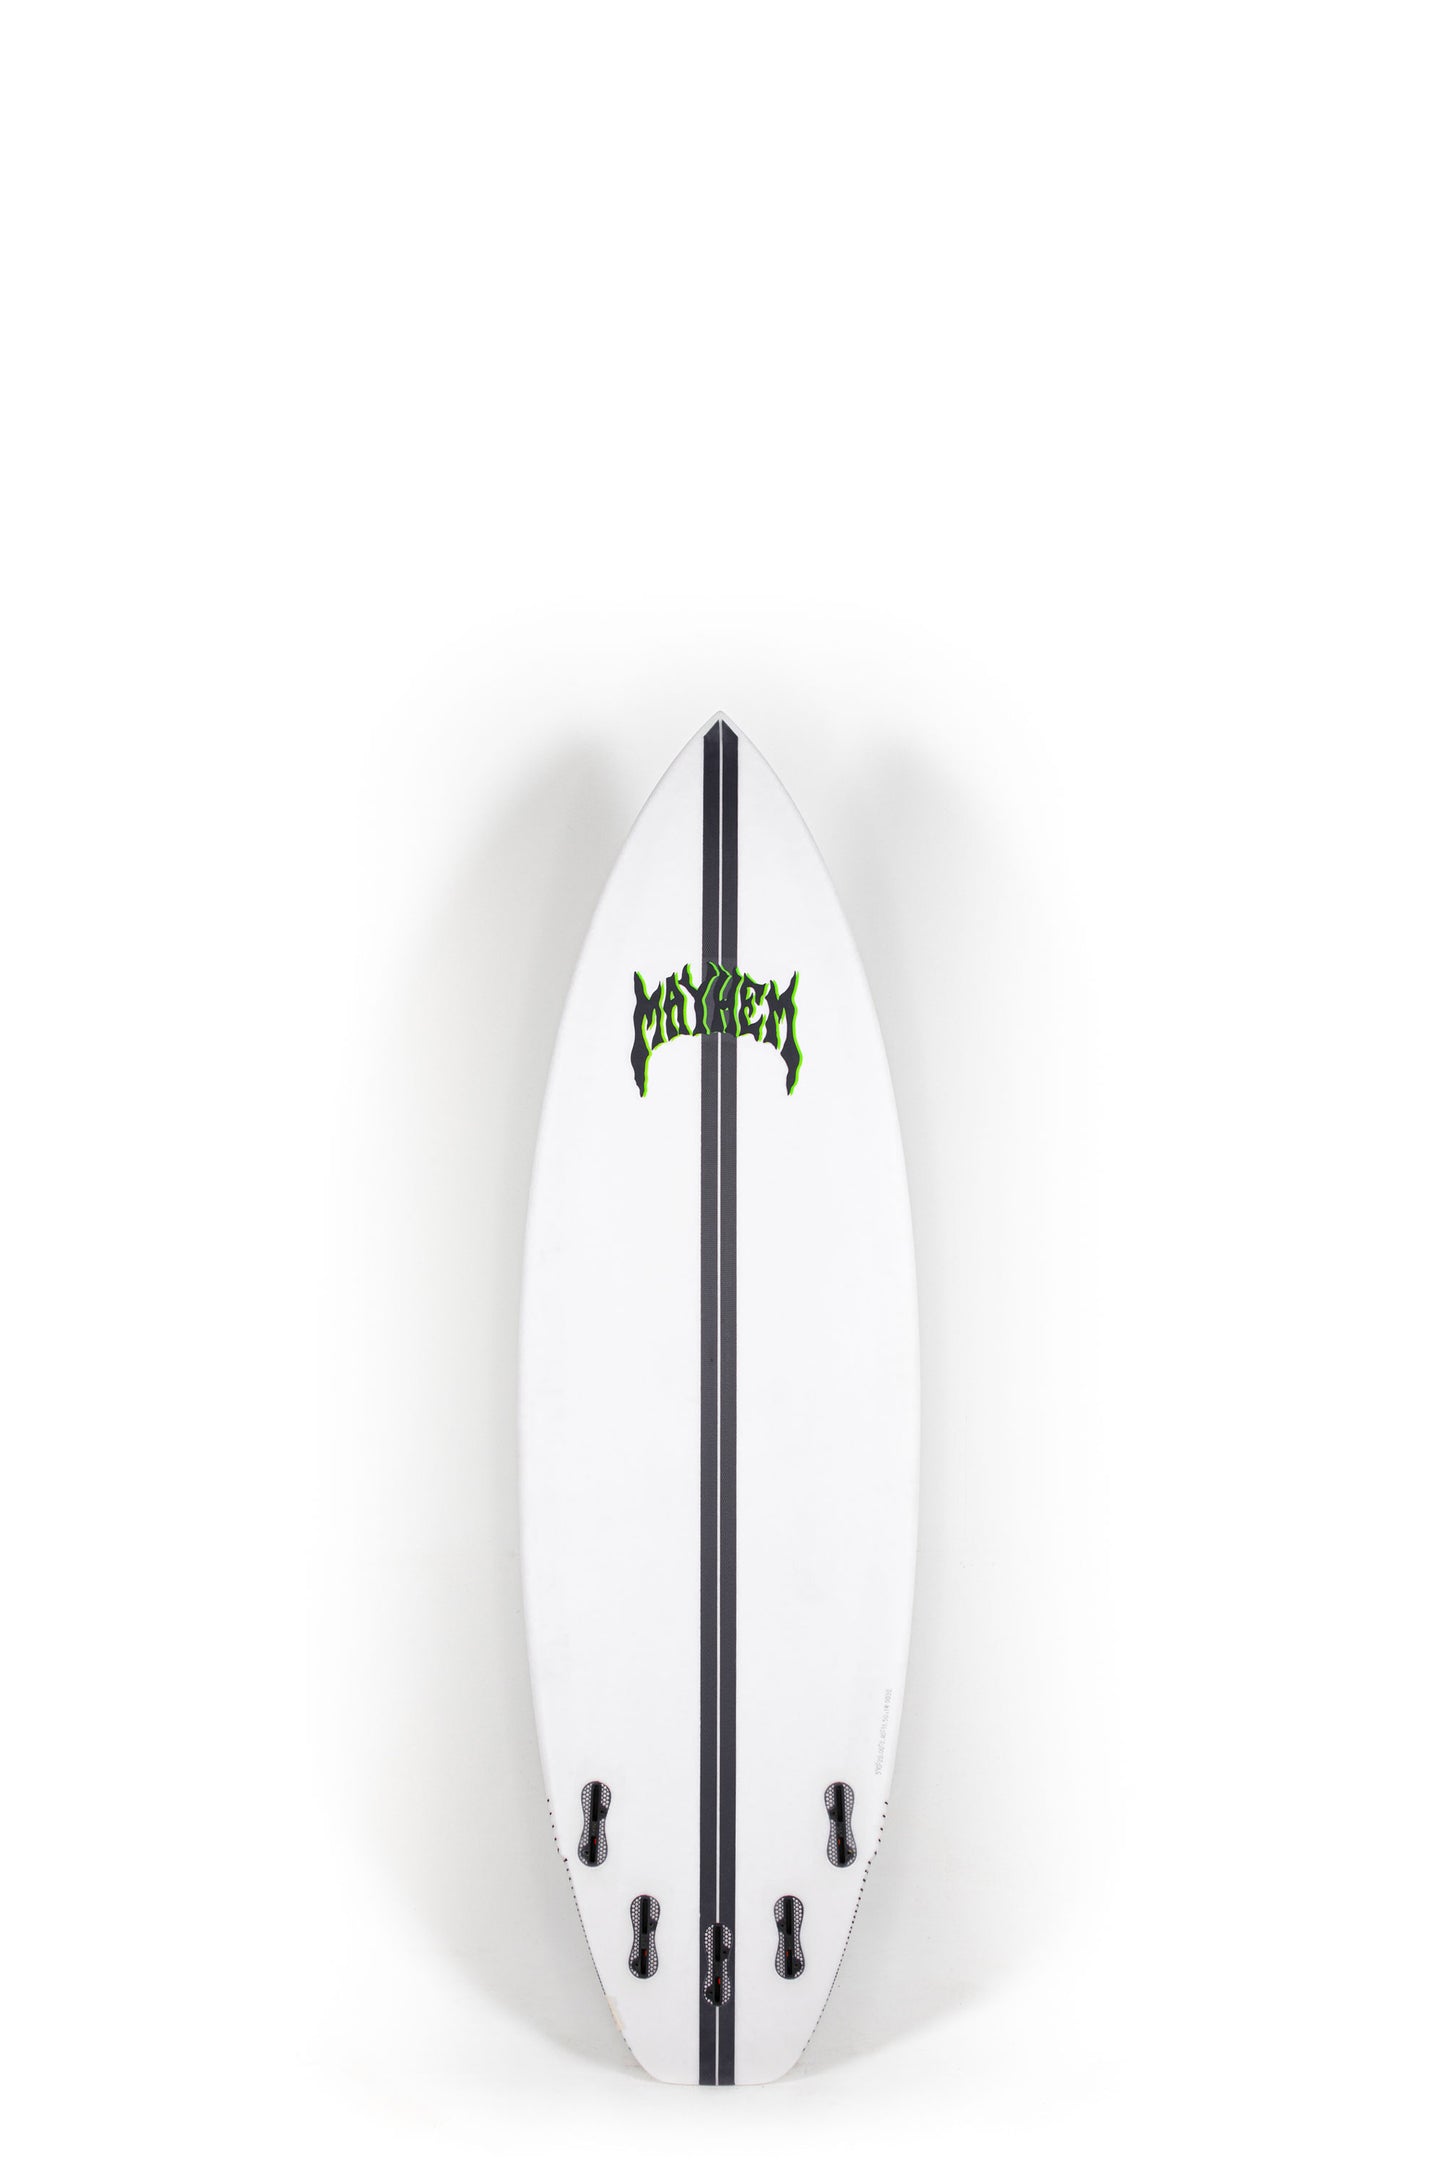 Lost Surfboard - RAD RIPPER by Matt Biolos - Light Speed - 5'10” x